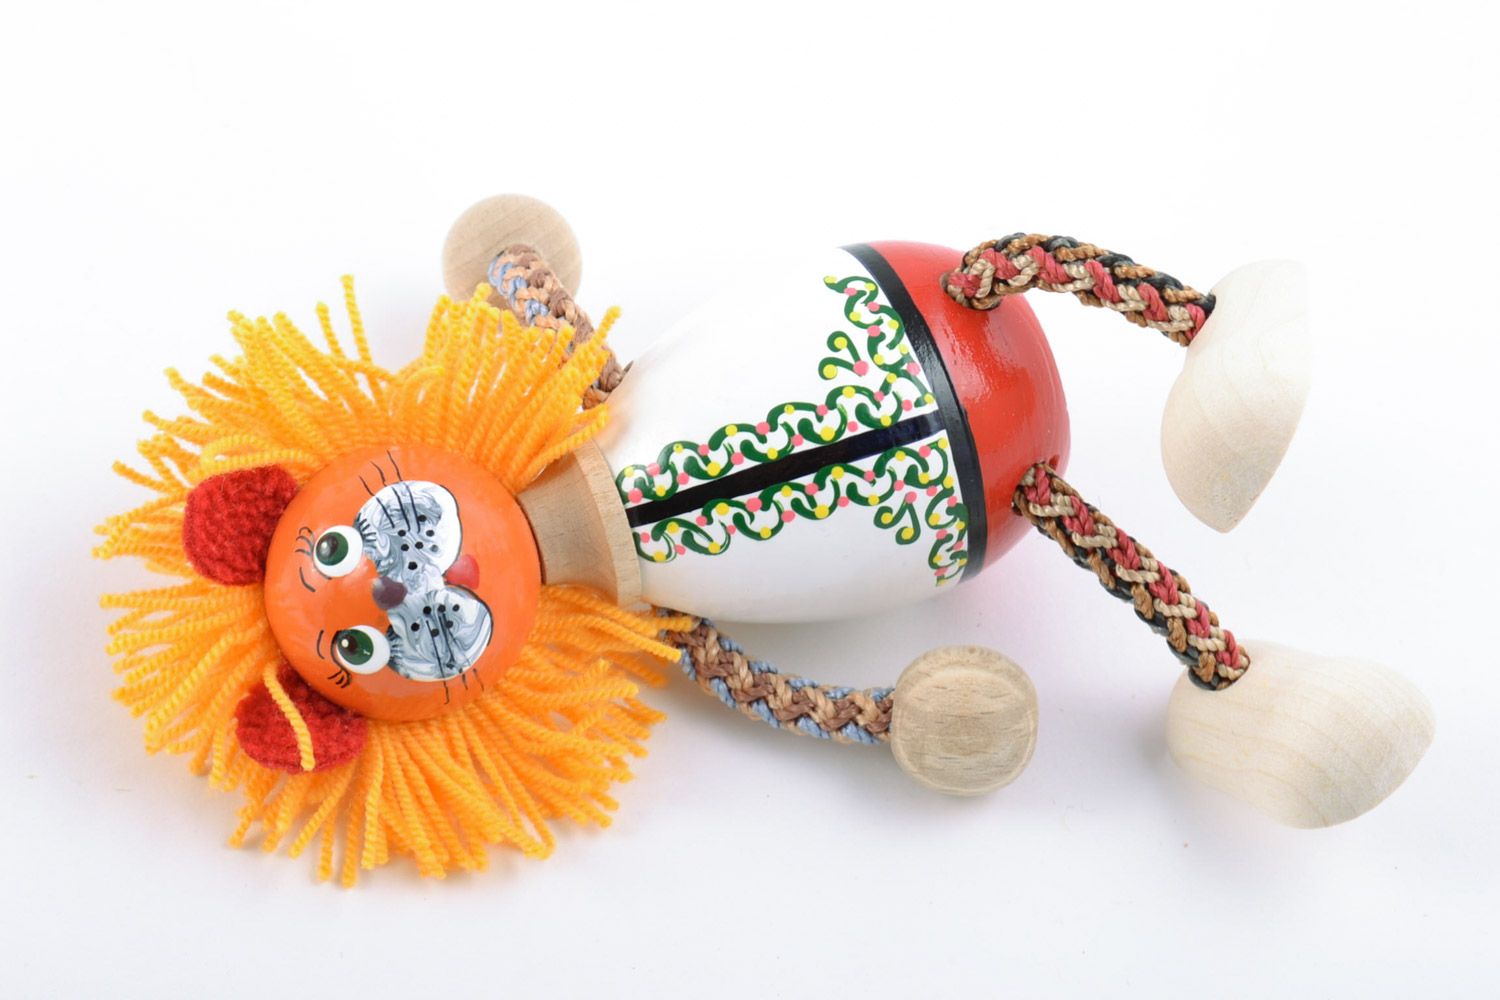 Jouet en bois original fait main peint figurine décorative pour enfant Lion photo 5